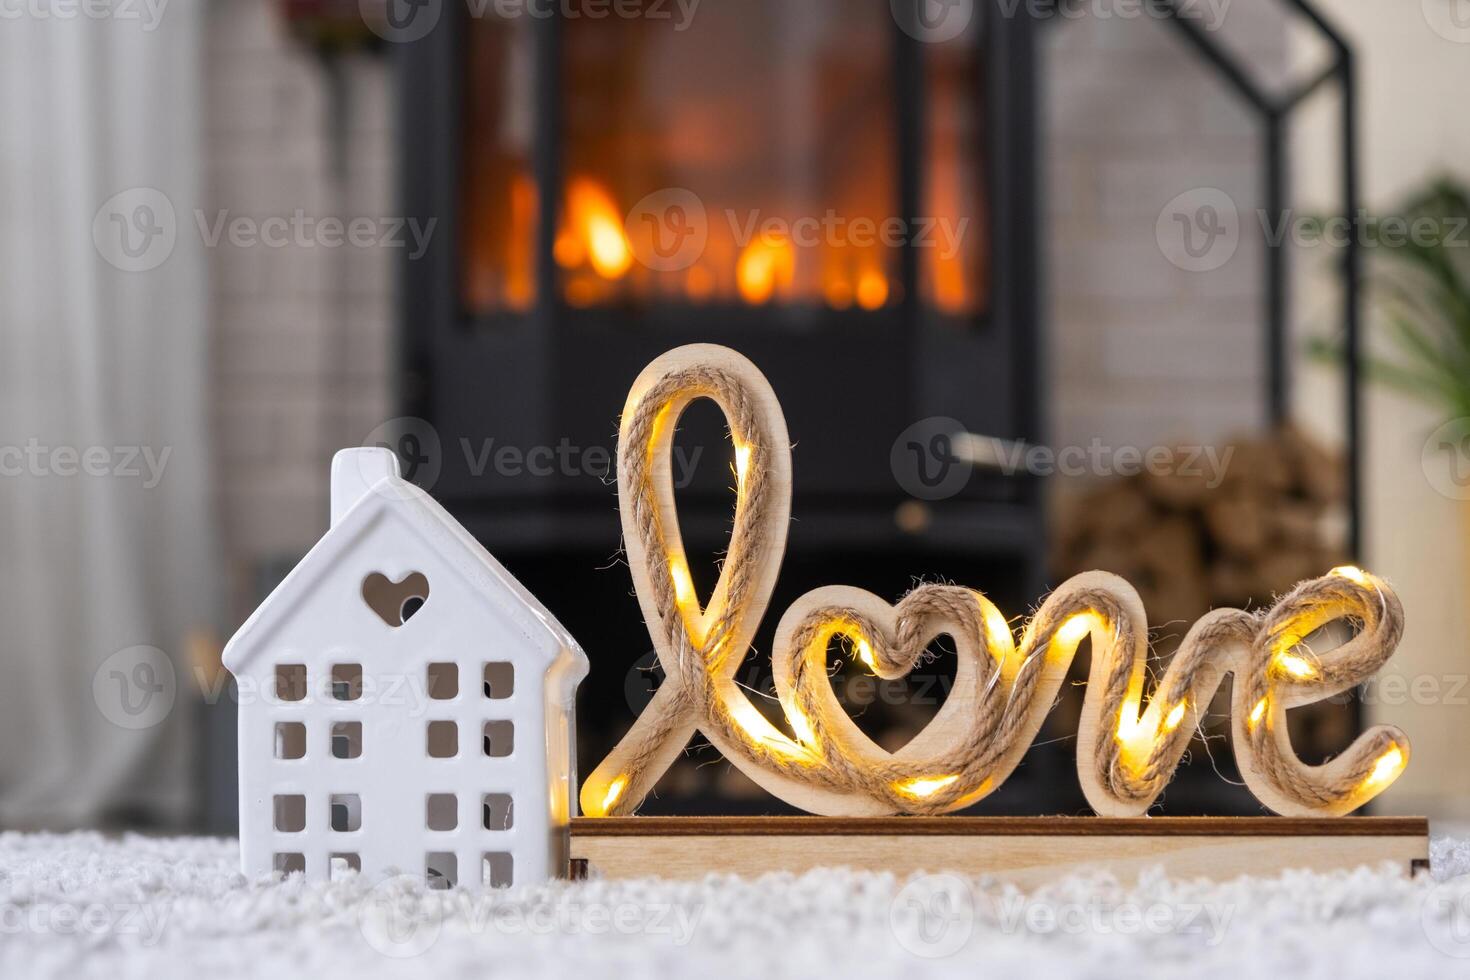 sleutel naar huis met sleutelhanger tegen achtergrond van haard fornuis met brand en brandhout in Valentijn decor, liefde huis. in beweging naar nieuw huis, hypotheek, huur en aankoop echt landgoed foto